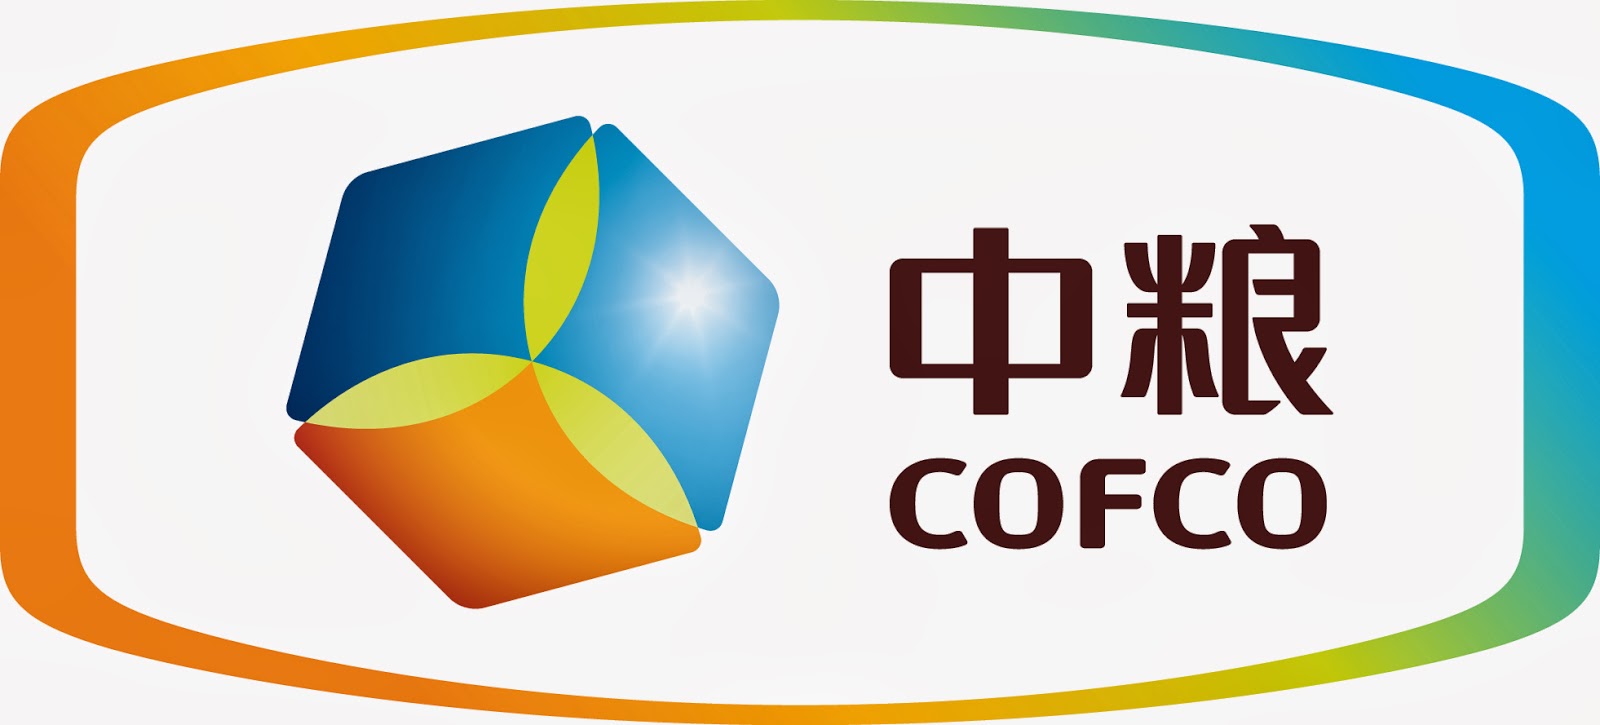 China Foods Brand Logo